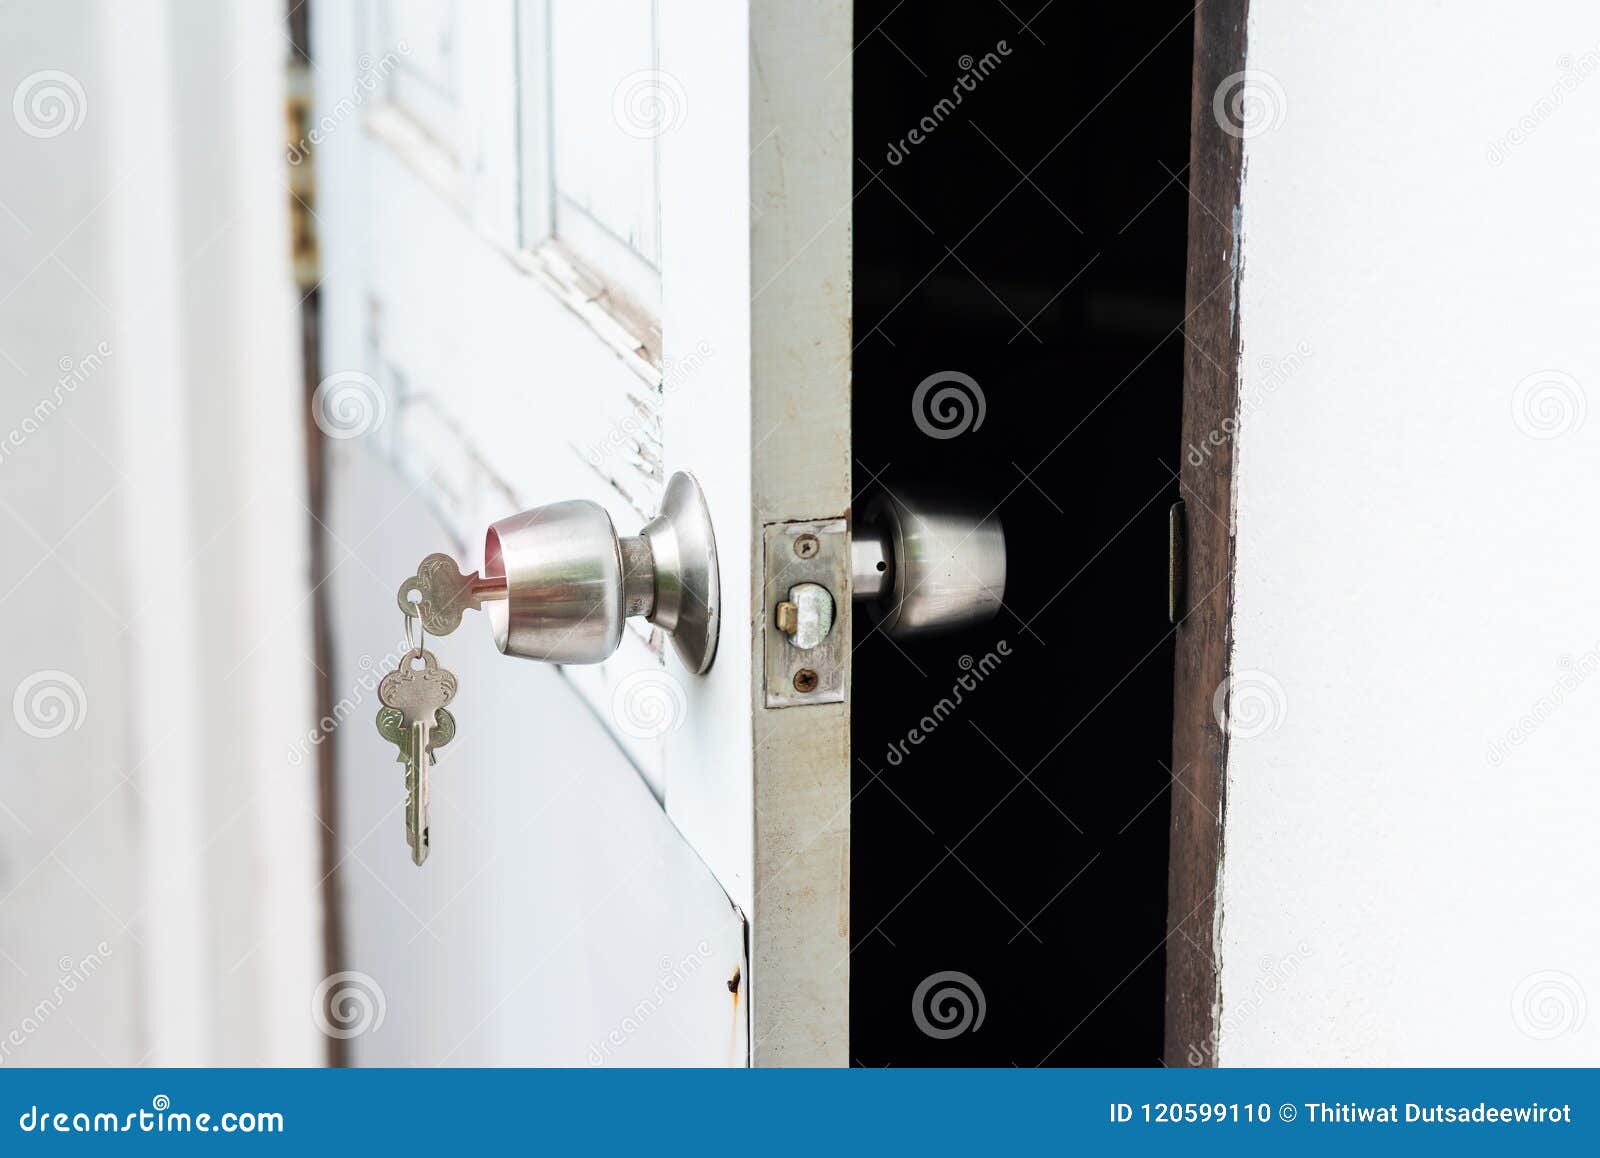 Insert Key In Hole Unlock And Open Door Stock Photo Image Of Open Dark 120599110